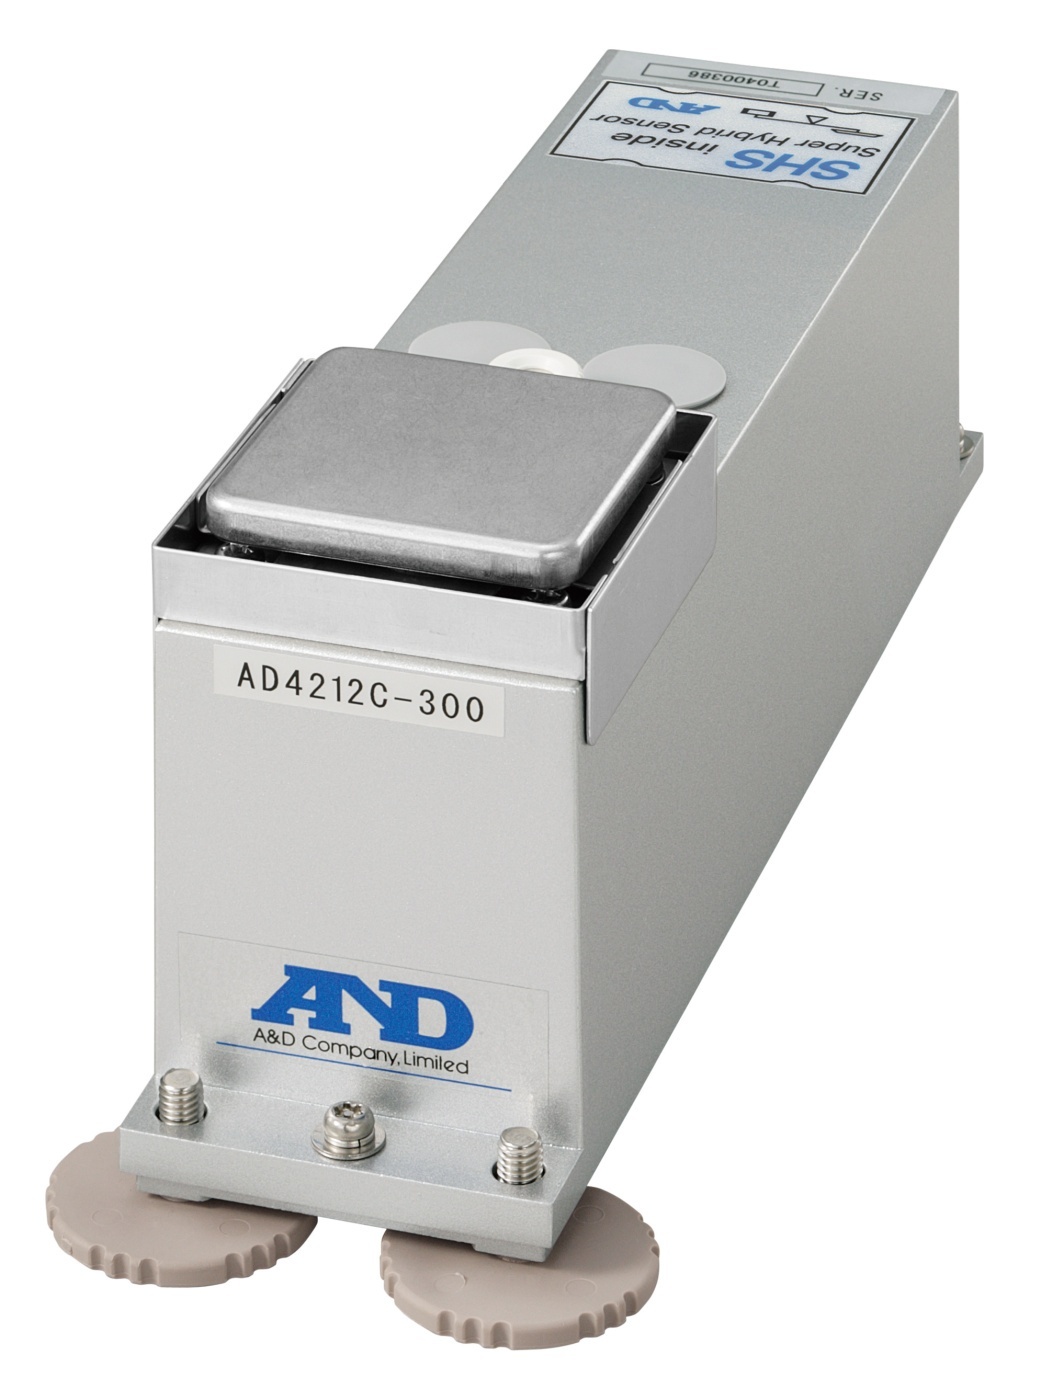 A&D艾安得AD-4212C-301点胶机称重模块的图片